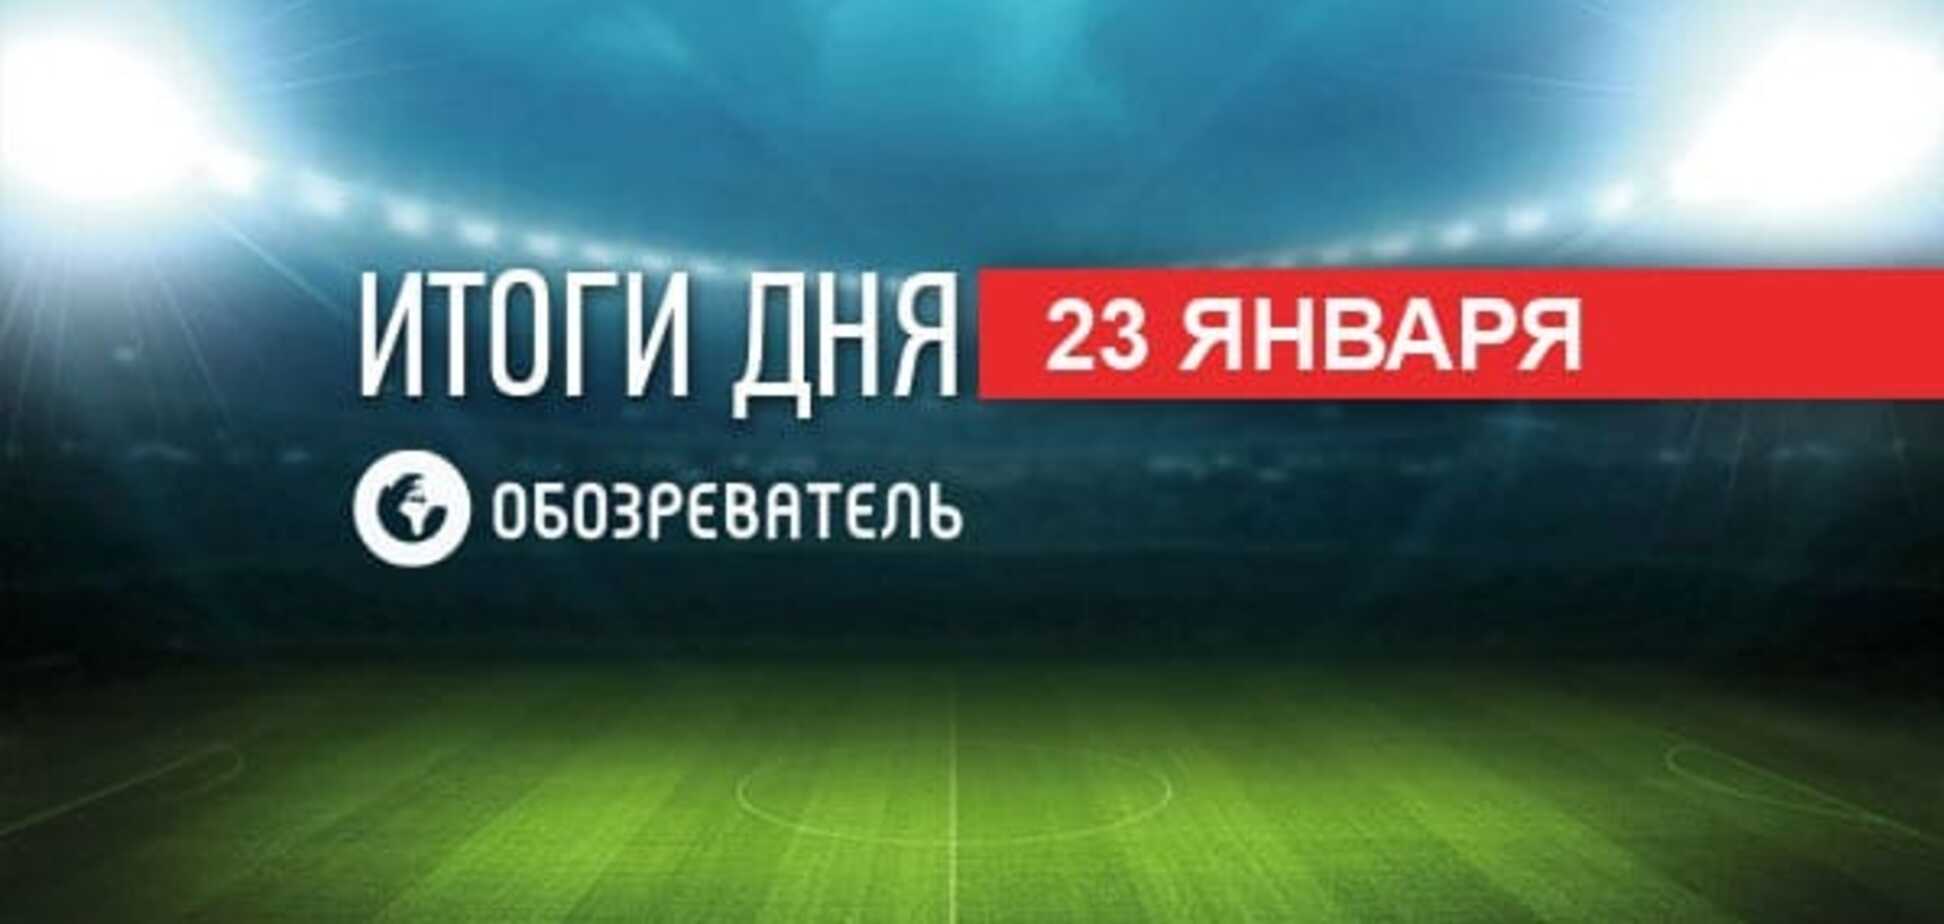 Футболісти 'Дніпра' поставили ультиматум. Спортивні підсумки 23 січня